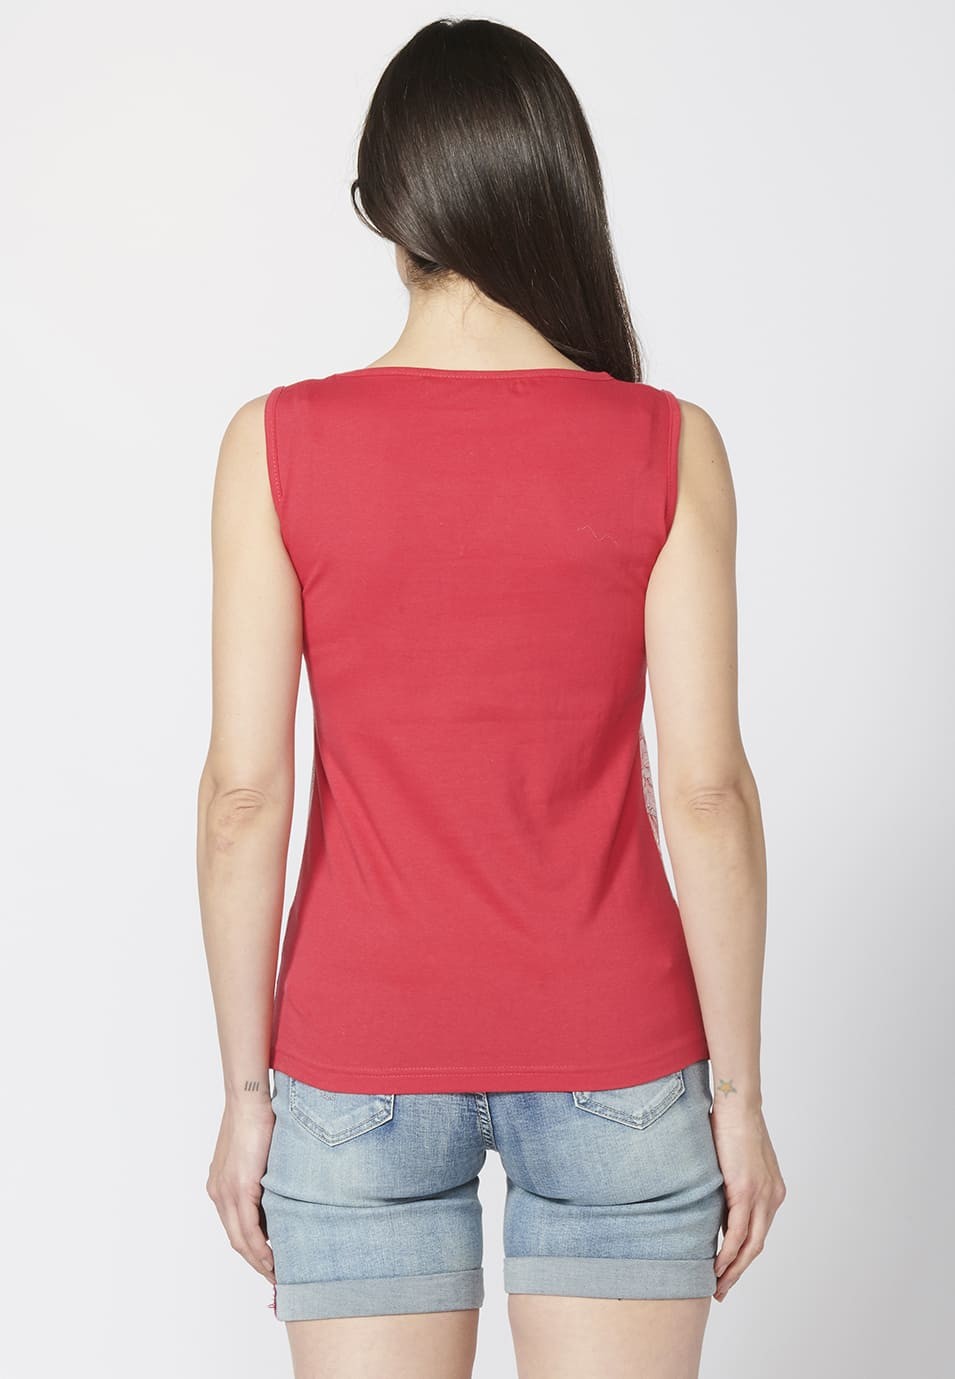 Camiseta Top tirantes de Algodón con escote en Pico y Estampado Floral para Mujer 5